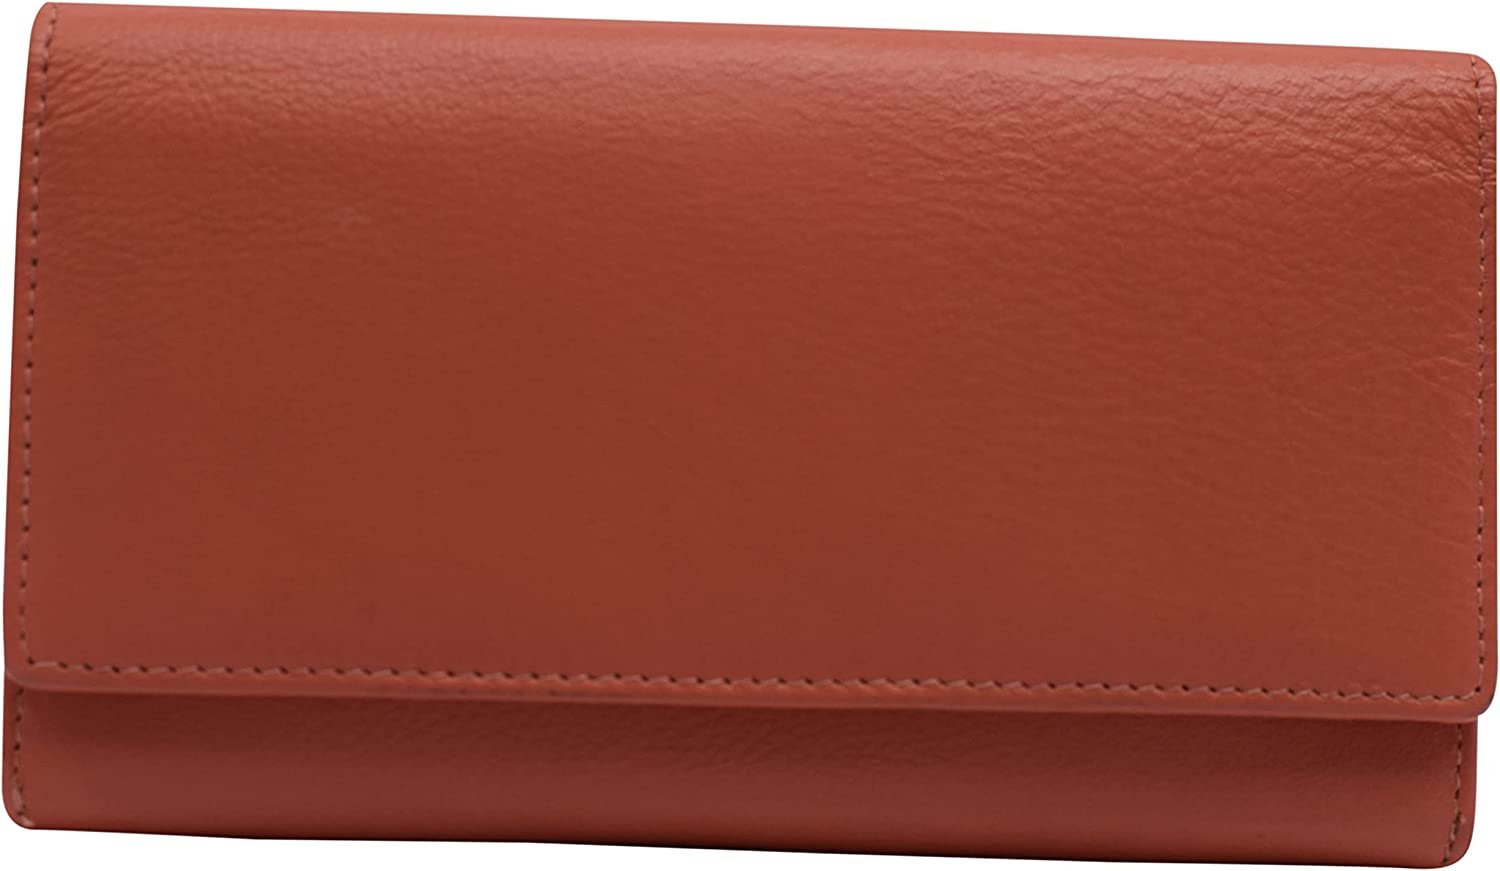 Marshal Womens RFID Genuine Leather Wallet Clutch Zip Around Checkbook Organizer for Ladies (Brown)